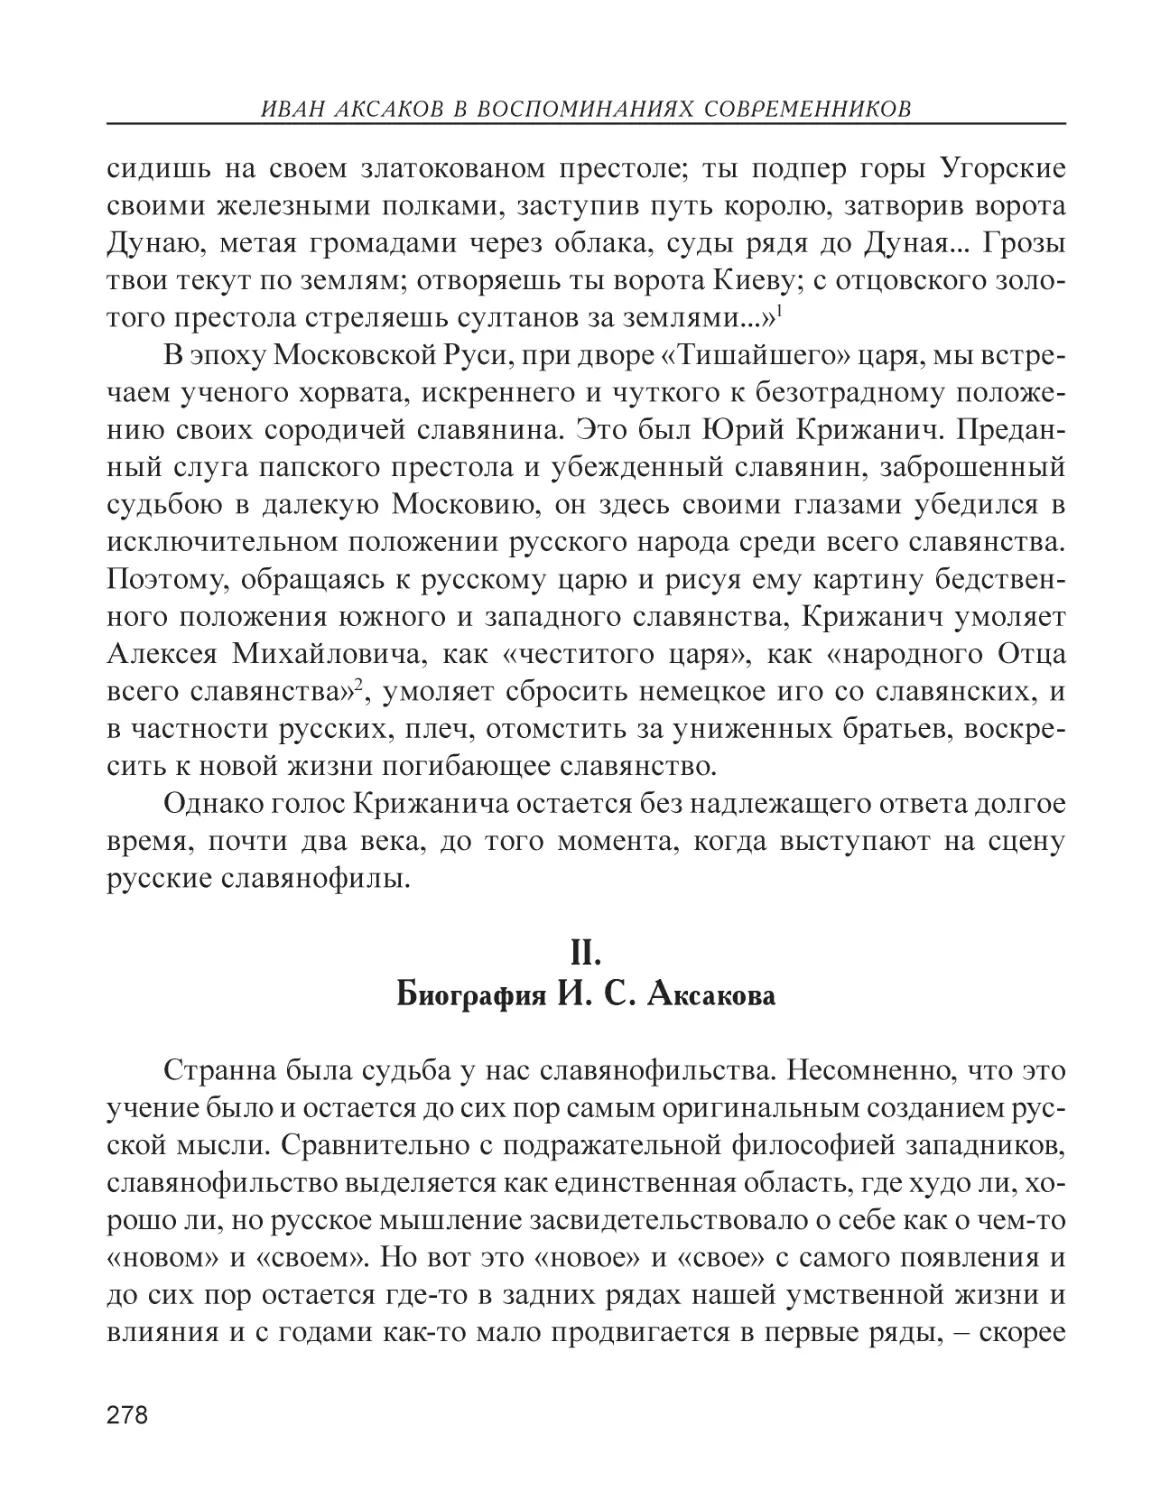 II. Биография И. С. Аксакова